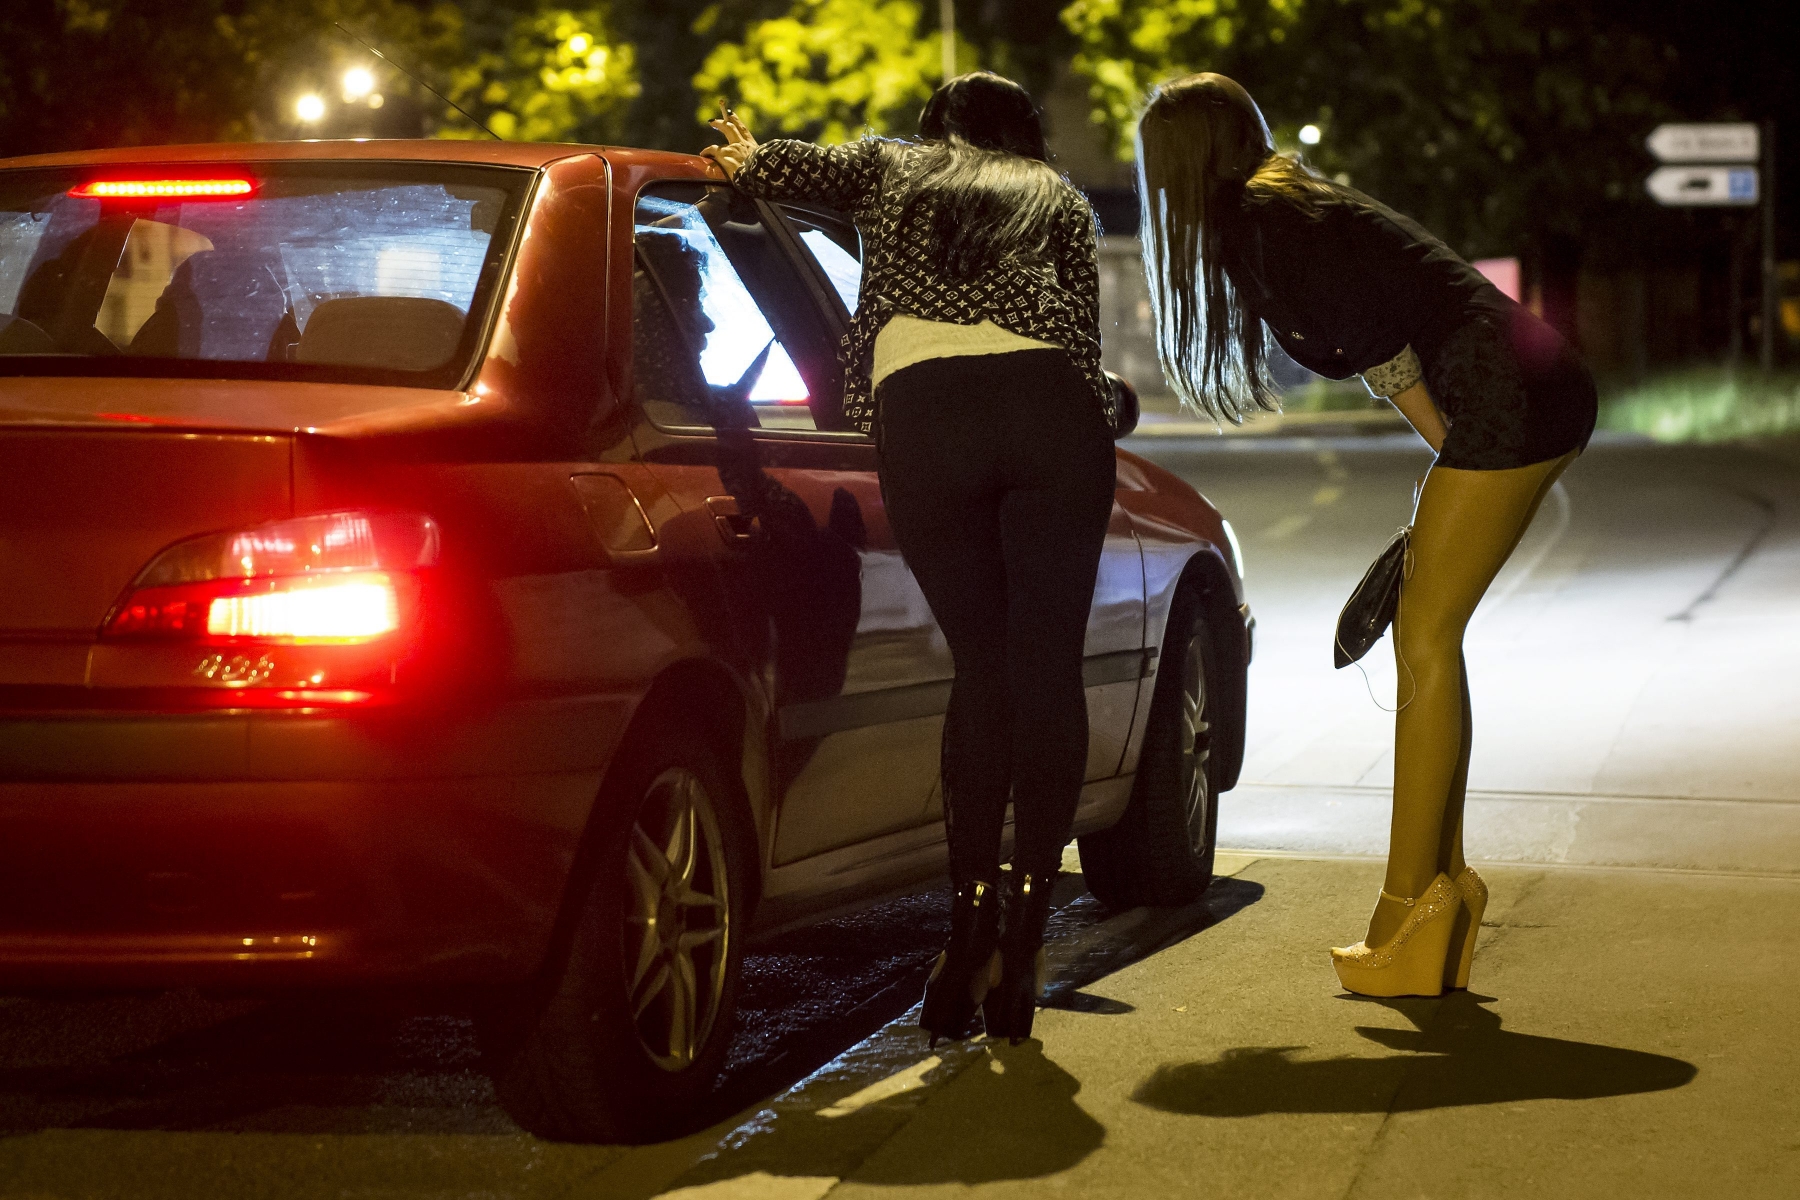 Une prostituee attend des clients qui passent en voiture sur un trottoir du centre ville dans la nuit du jeudi 7 au vendredi 8 juillet 2014 a Lausanne. La scene de la prostitution est visible sur la rue de Geneve, et l'avenue de Sevelin dans le quartier de Sebeillon a Lausanne. (KEYSTONE/Jean-Christophe Bott)